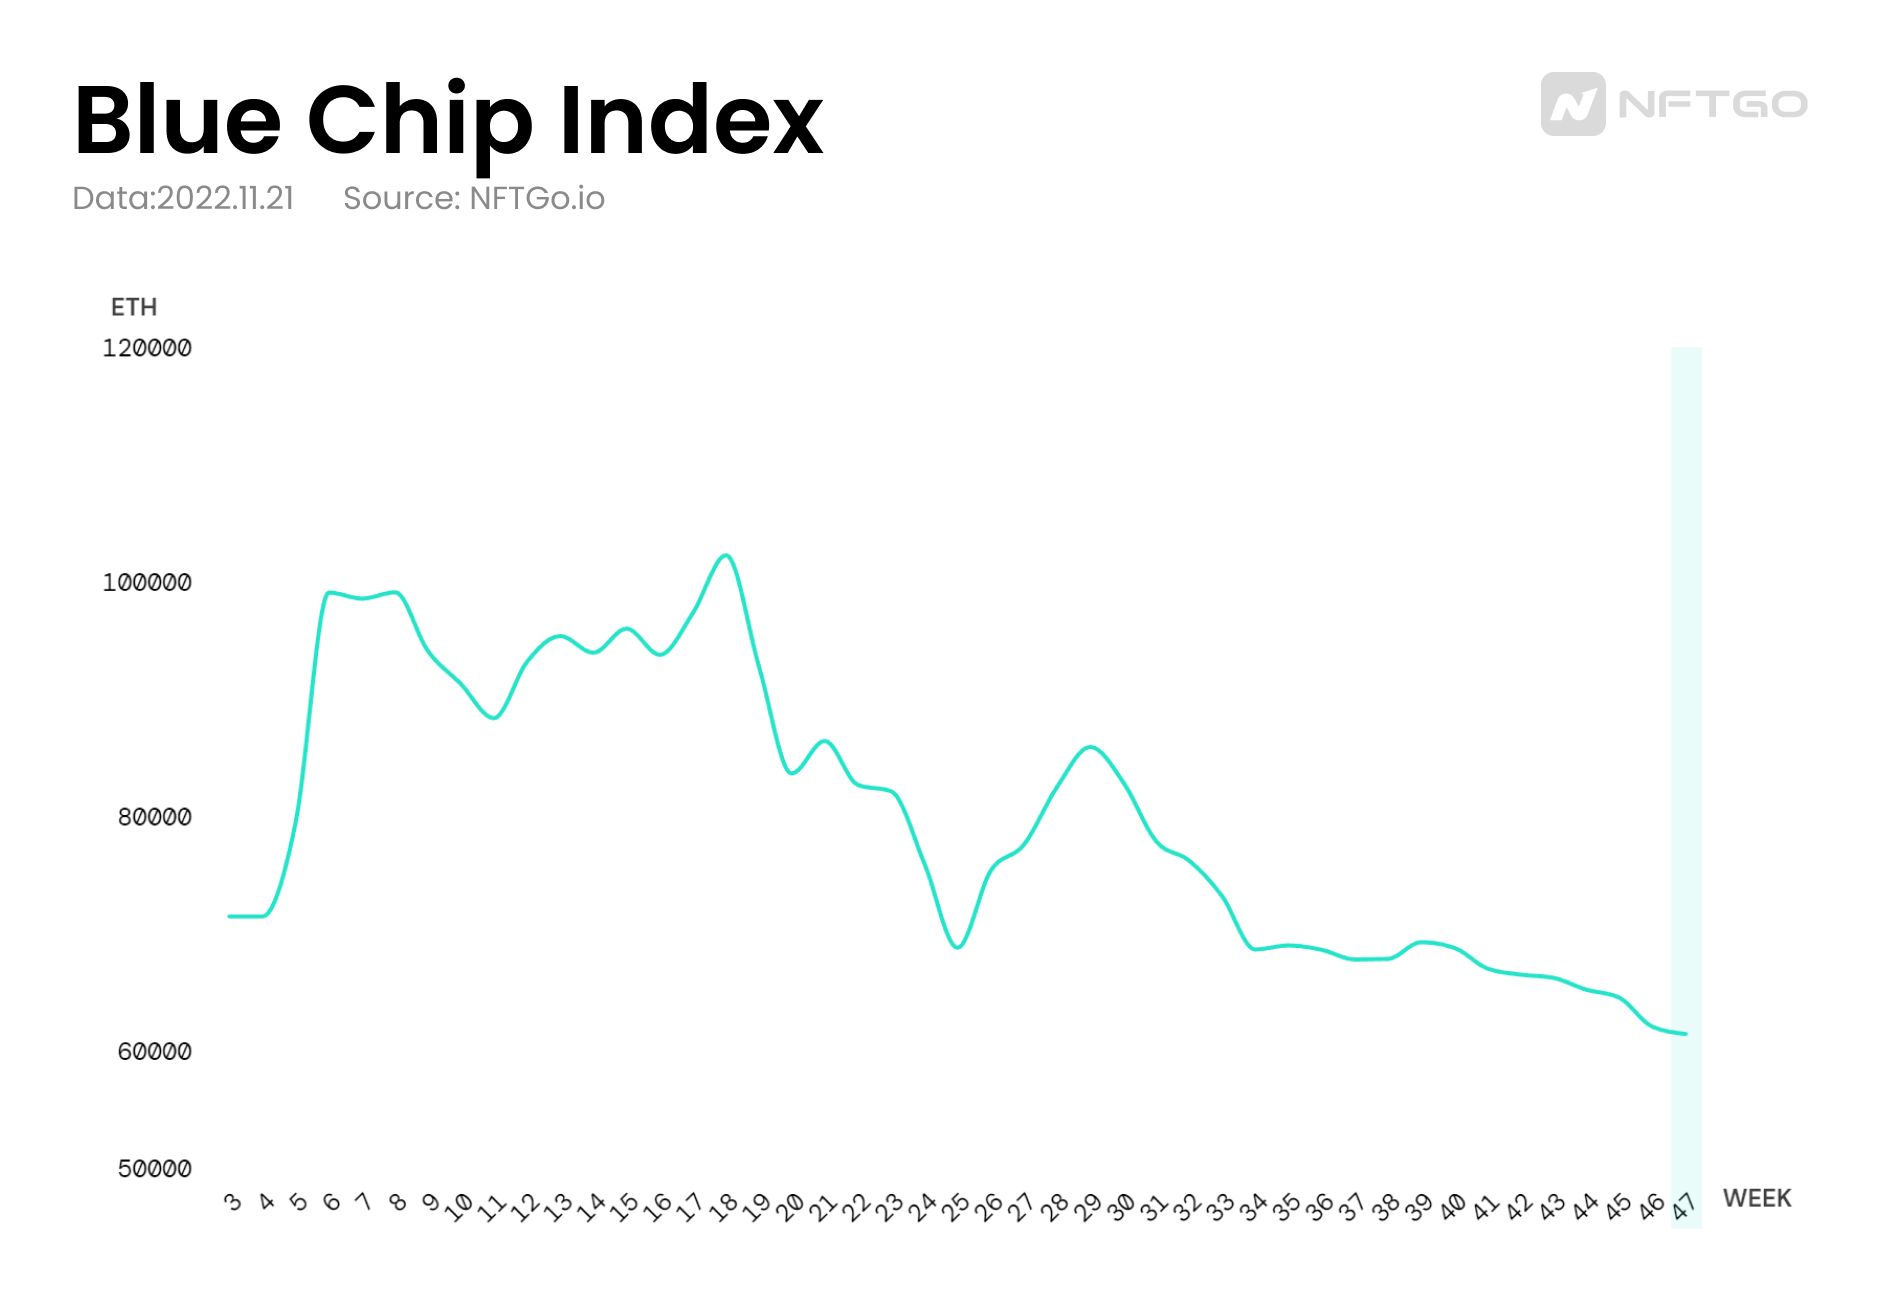 Market Cap Trend of Blue Chip NFTs (Source: nftgo.io)